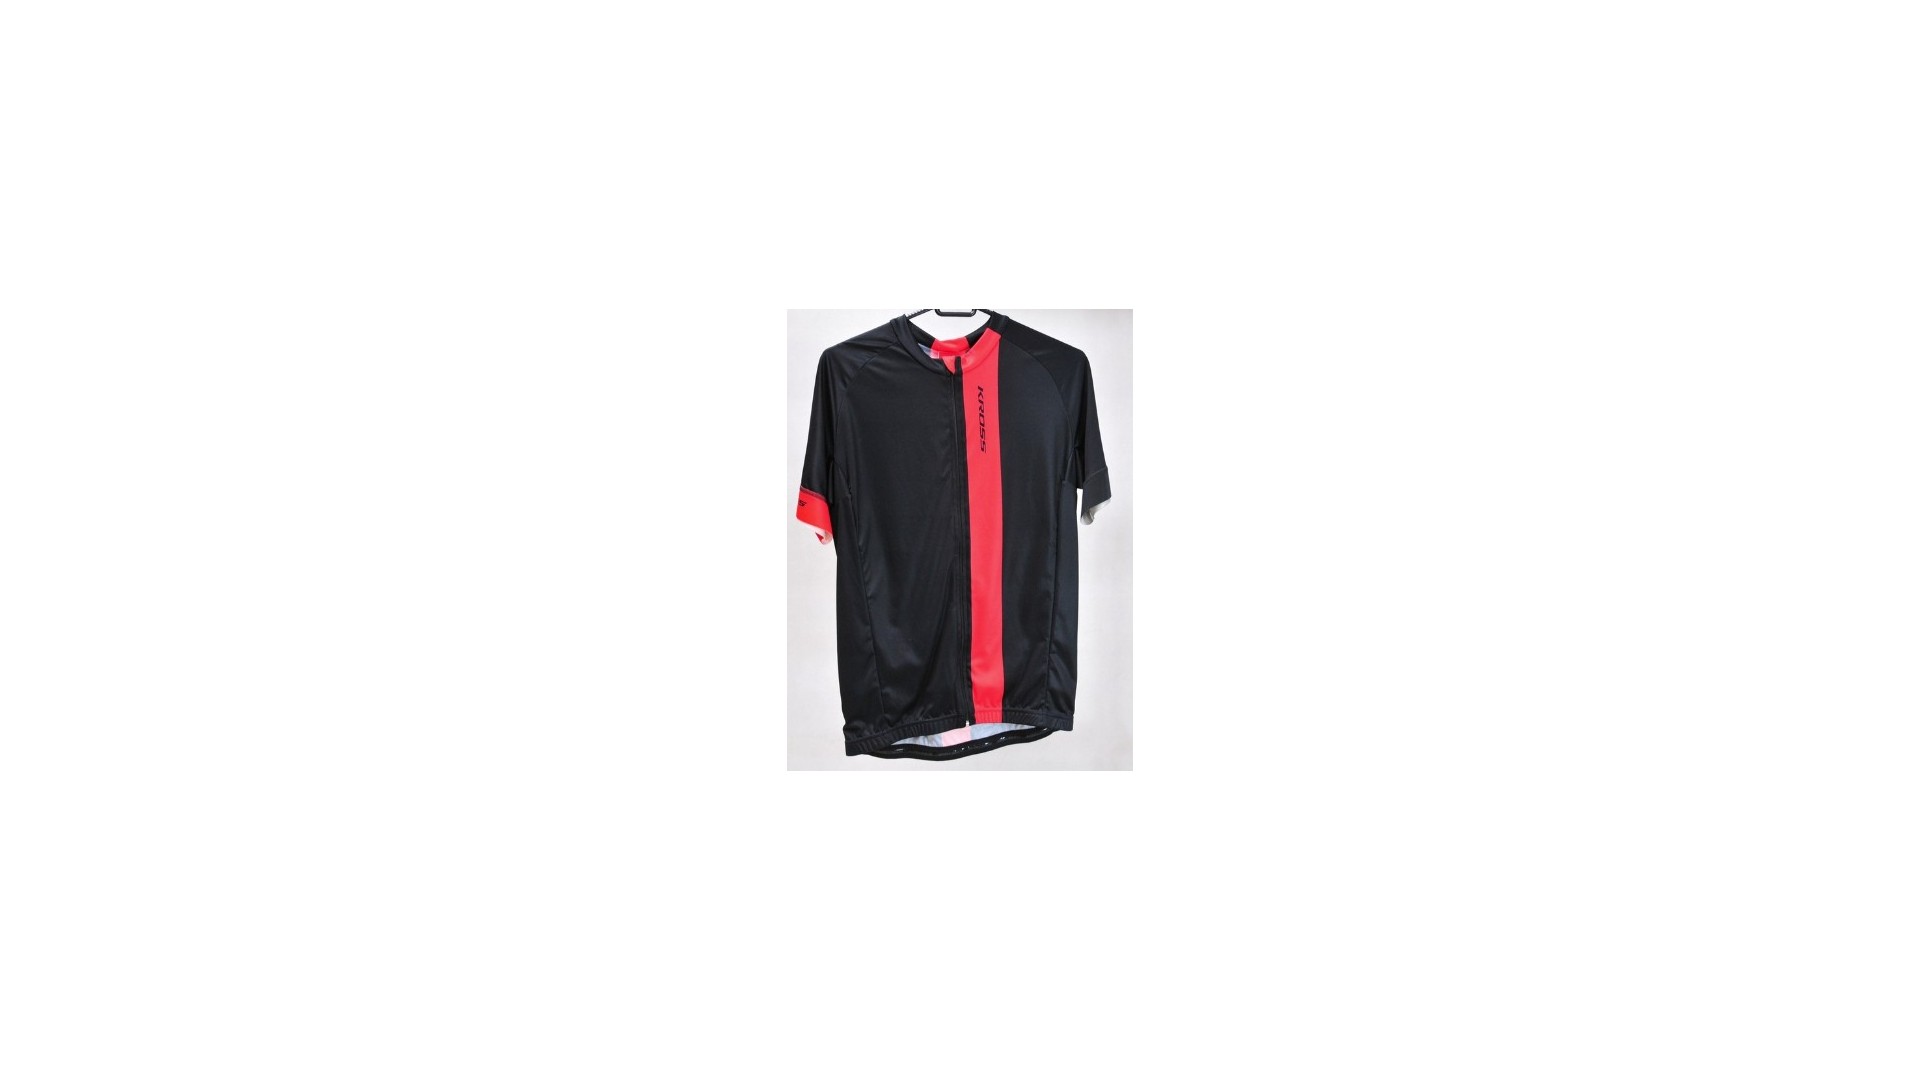 Koszulka na rower KROSS  Pave czarno-czerwona r. M  - T4COD000011MBKRD